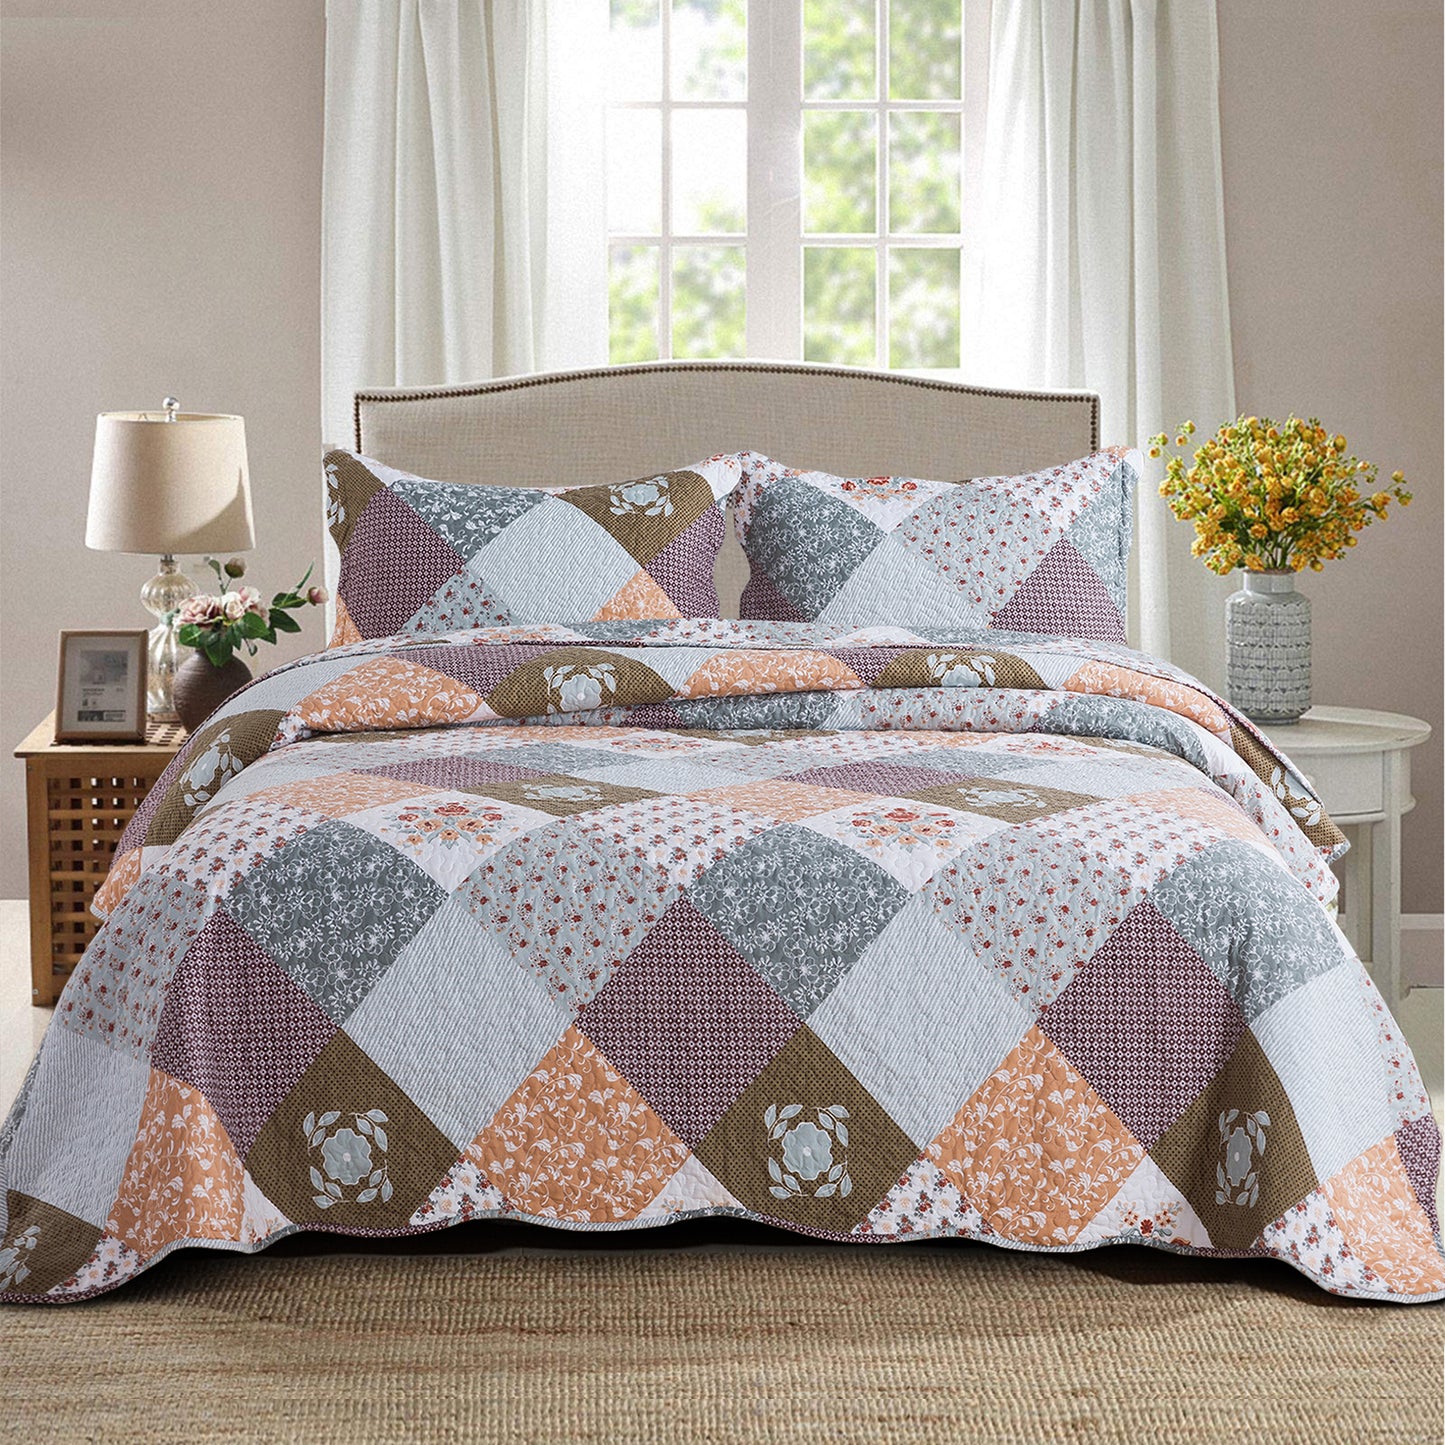 Boho Quilt Bedspread Sets-Checkered Floral Reversible Coverlet Set